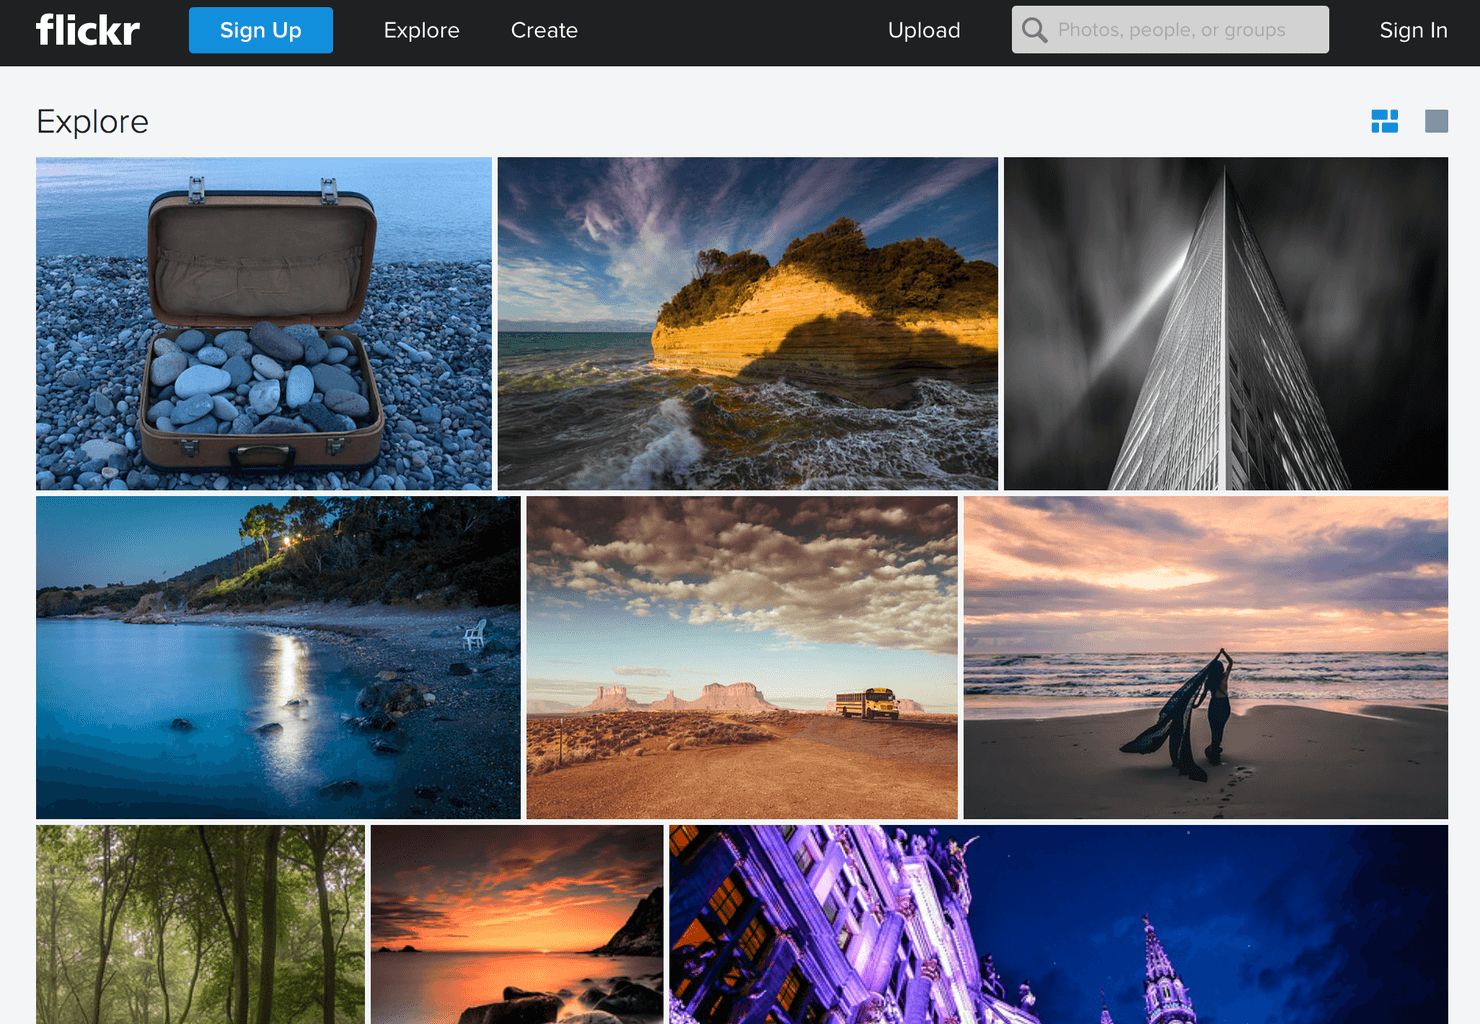 flickr homepage